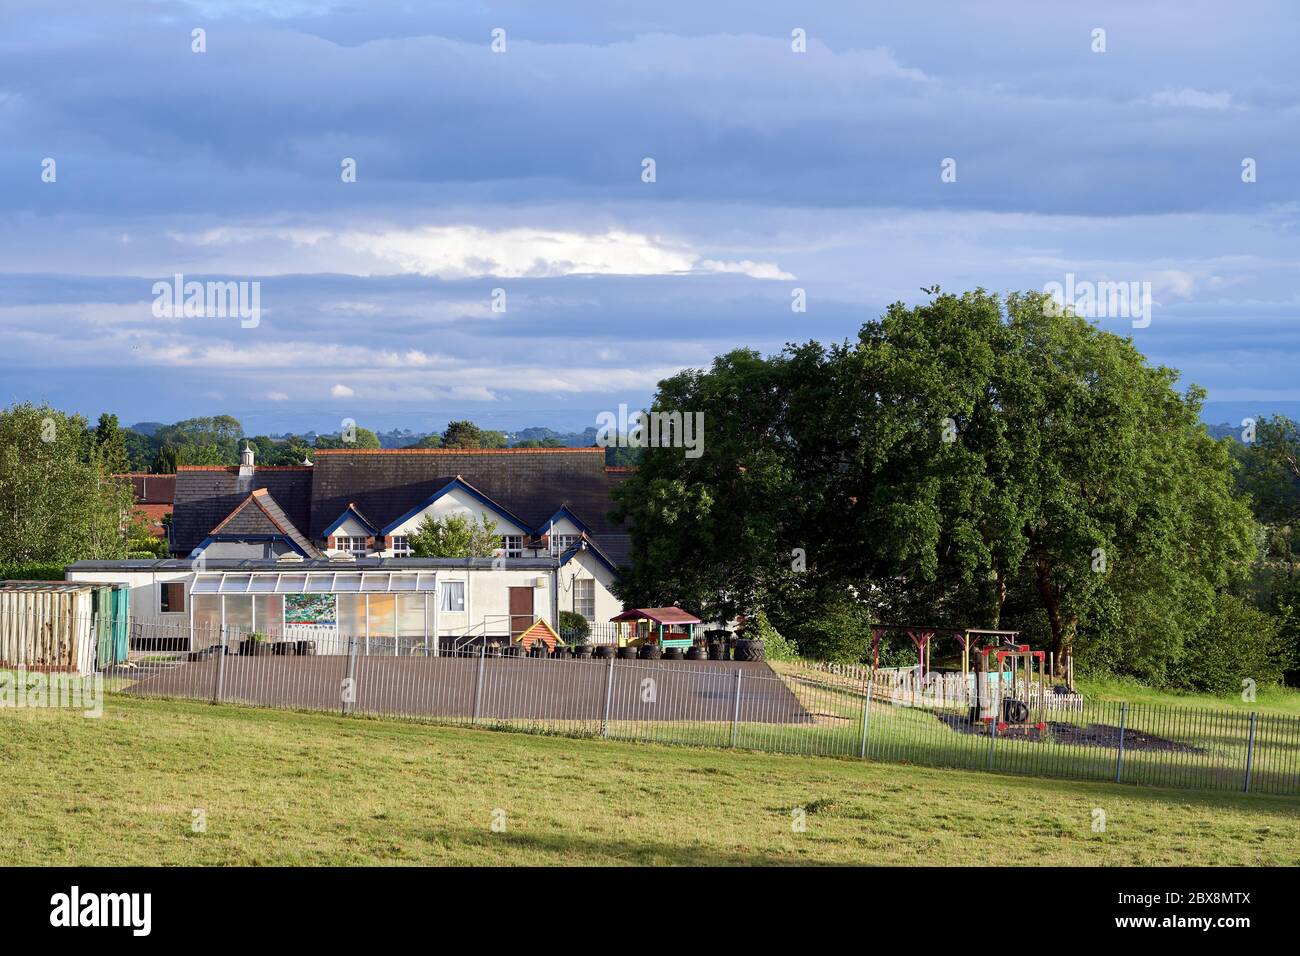 Campos de juego escolares no utilizados durante el cierre del coronavirus, Gales del Sur 2020 Foto de stock